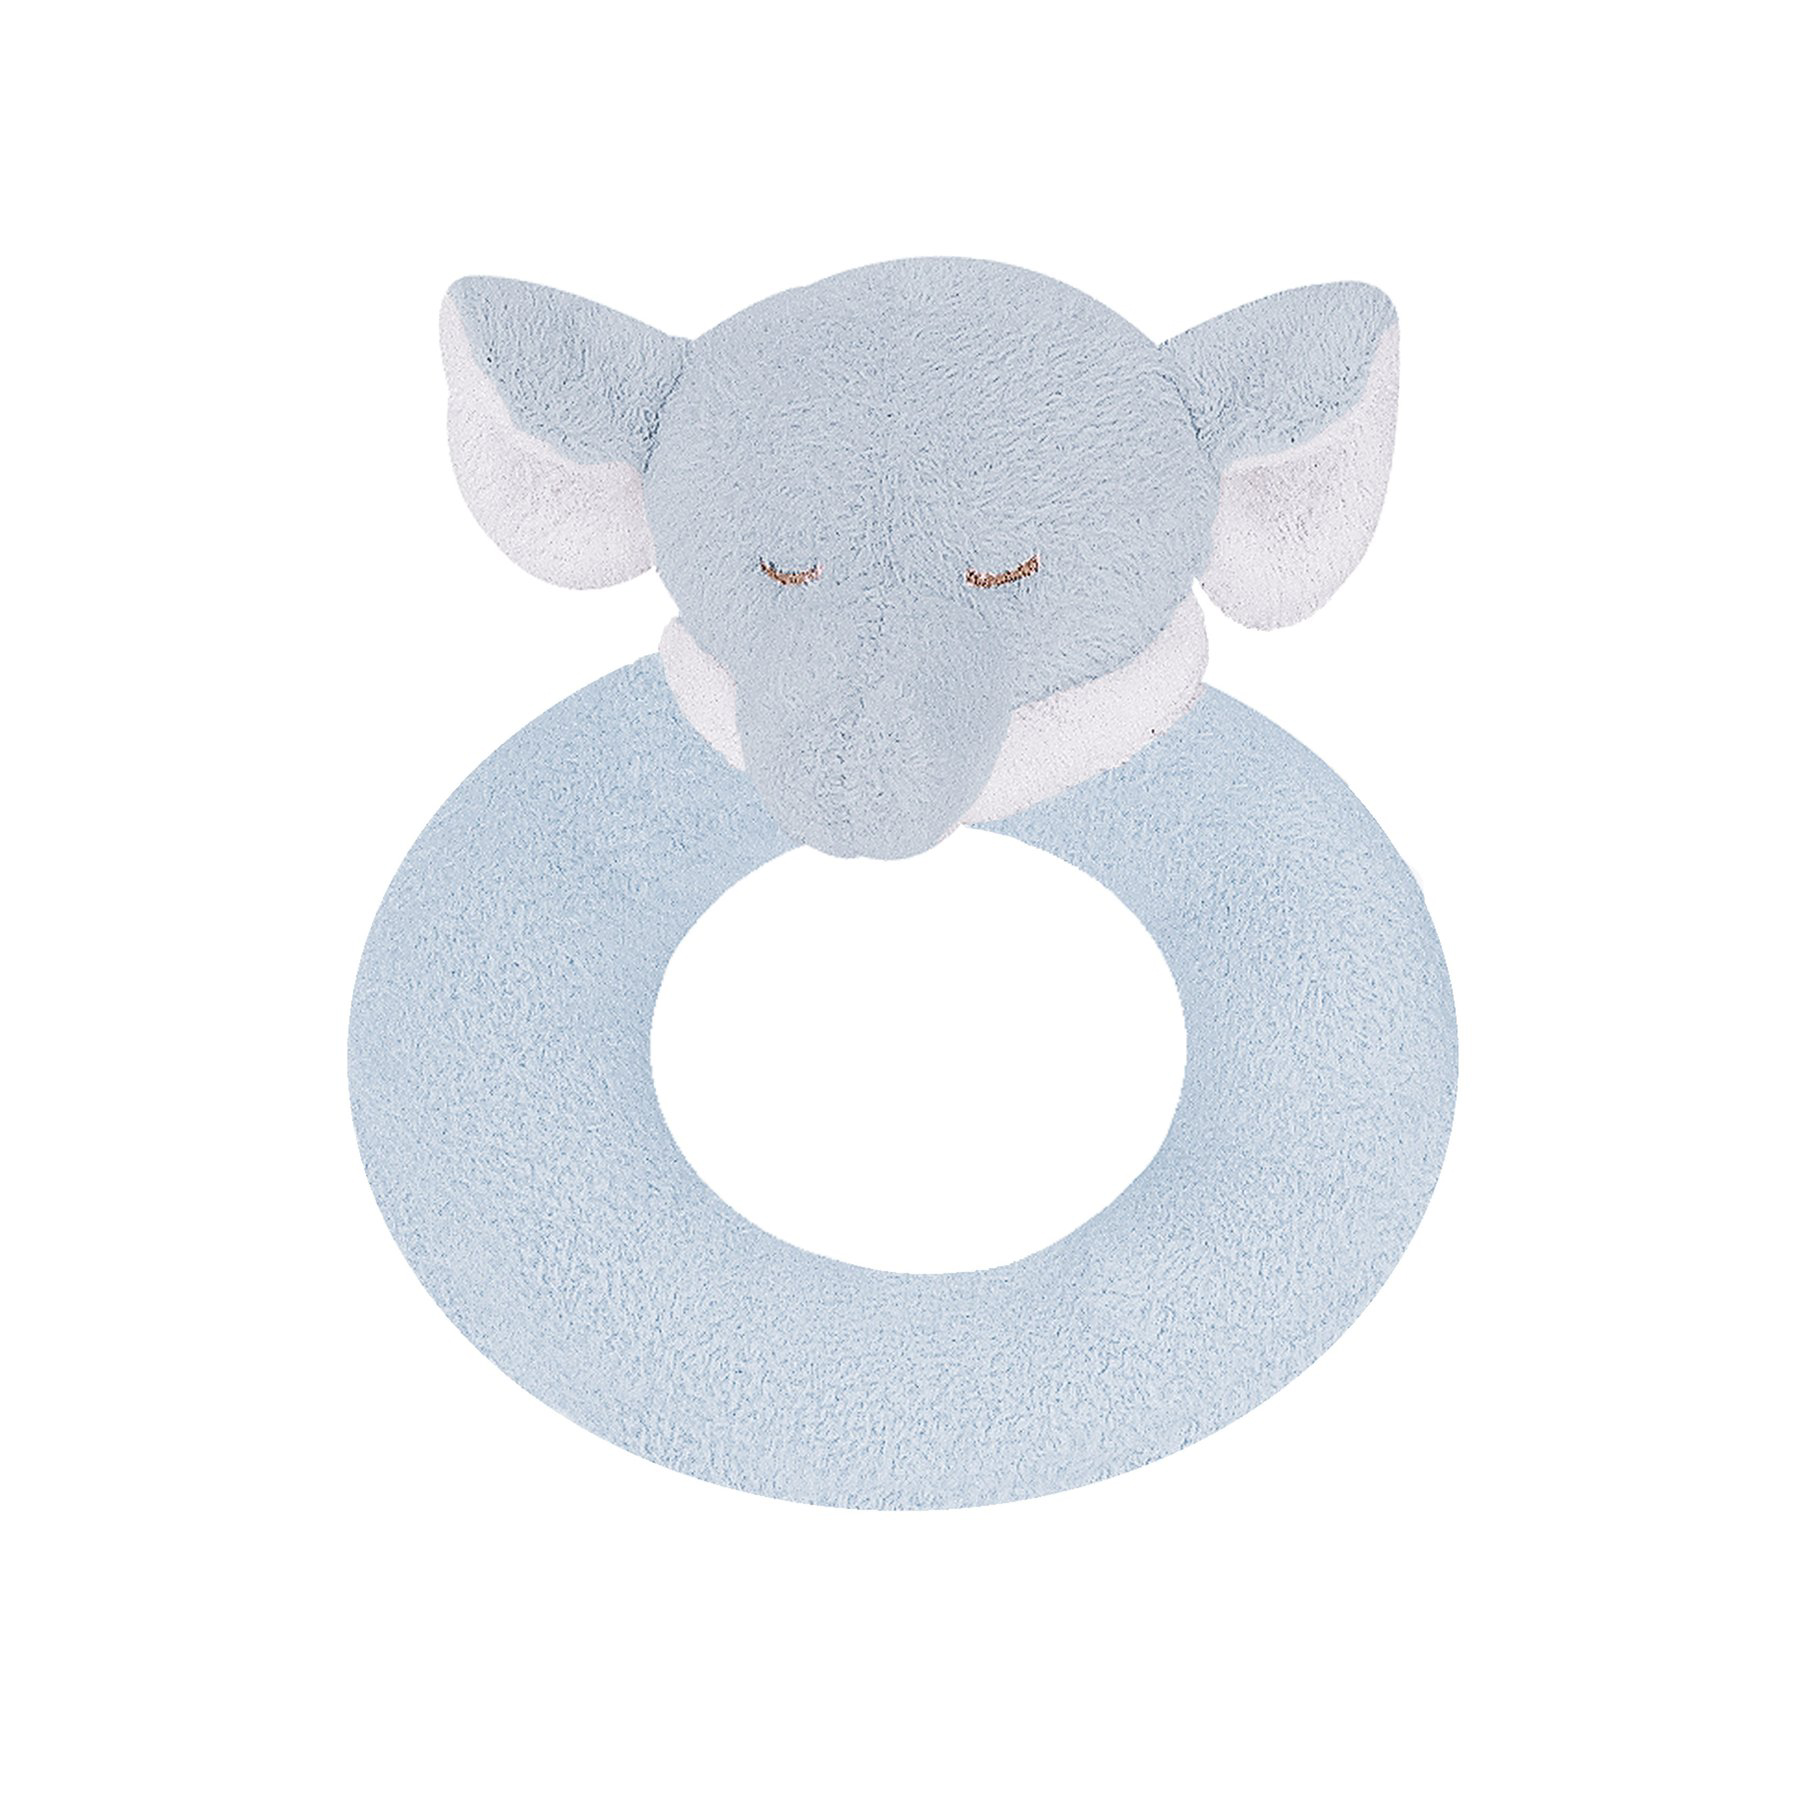 Blue Elephant ring rattle by Angel Dear 1